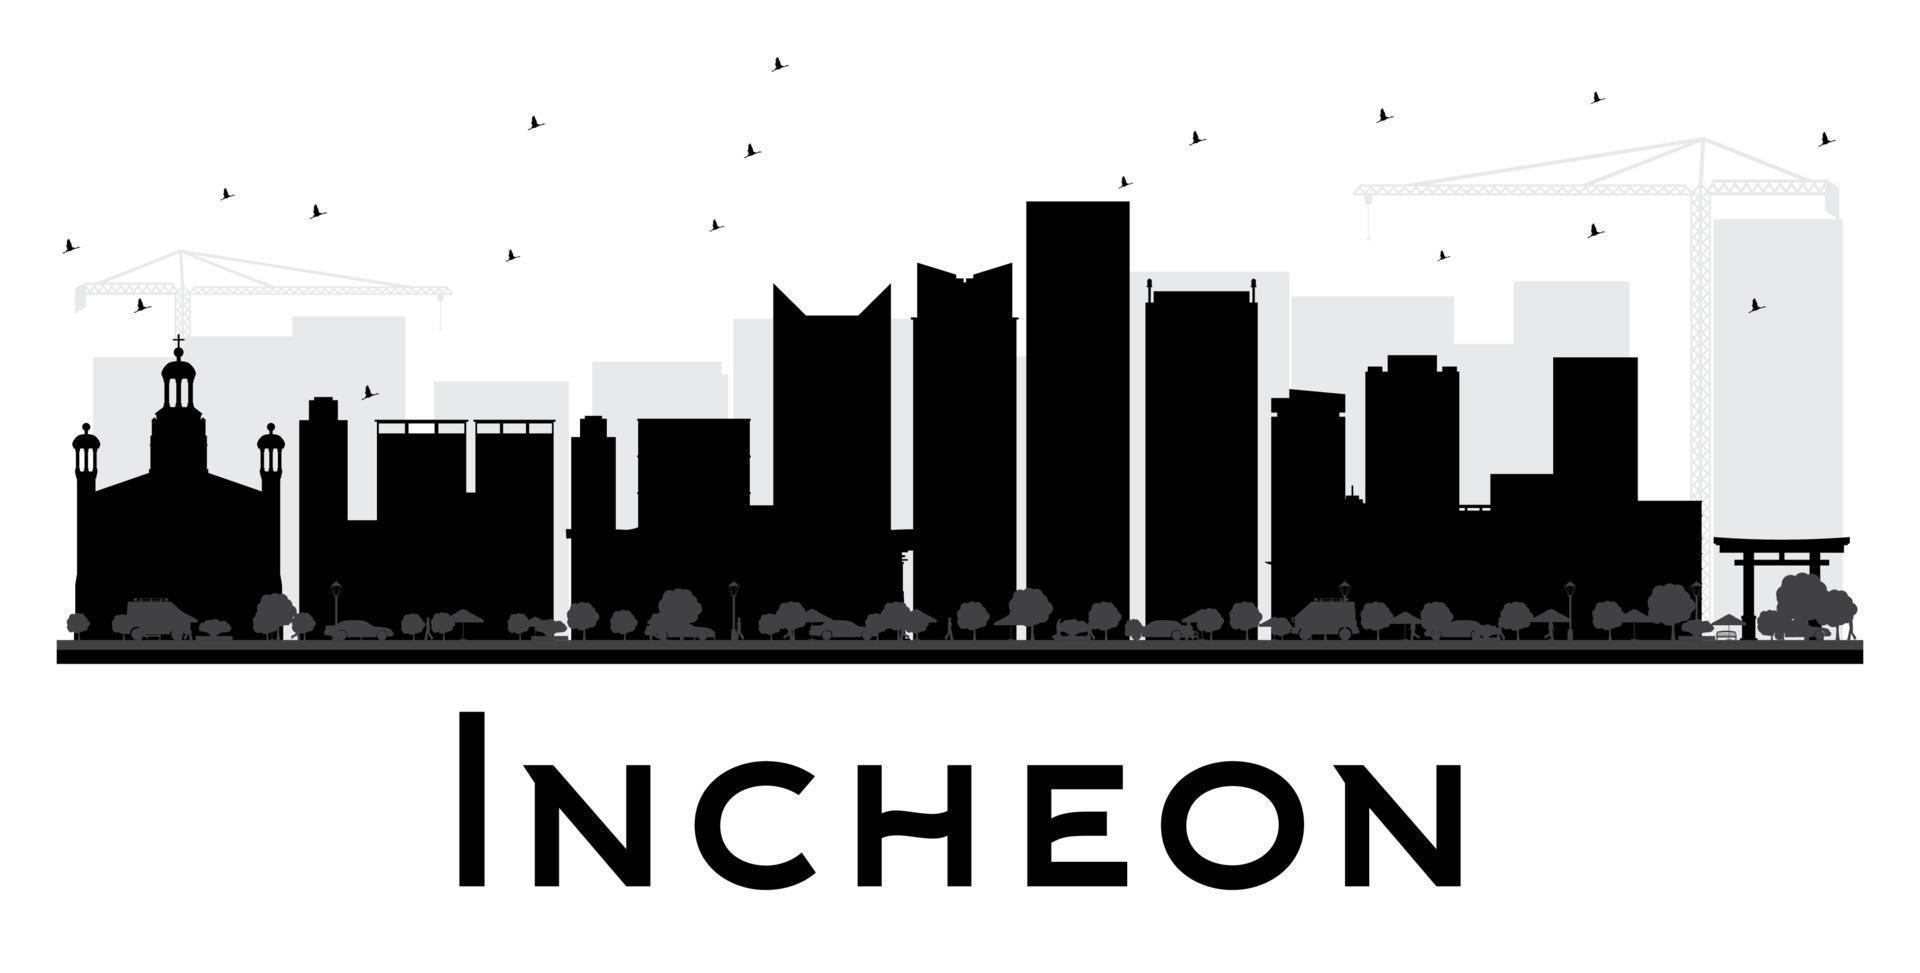 silueta en blanco y negro del horizonte de la ciudad de incheon. vector